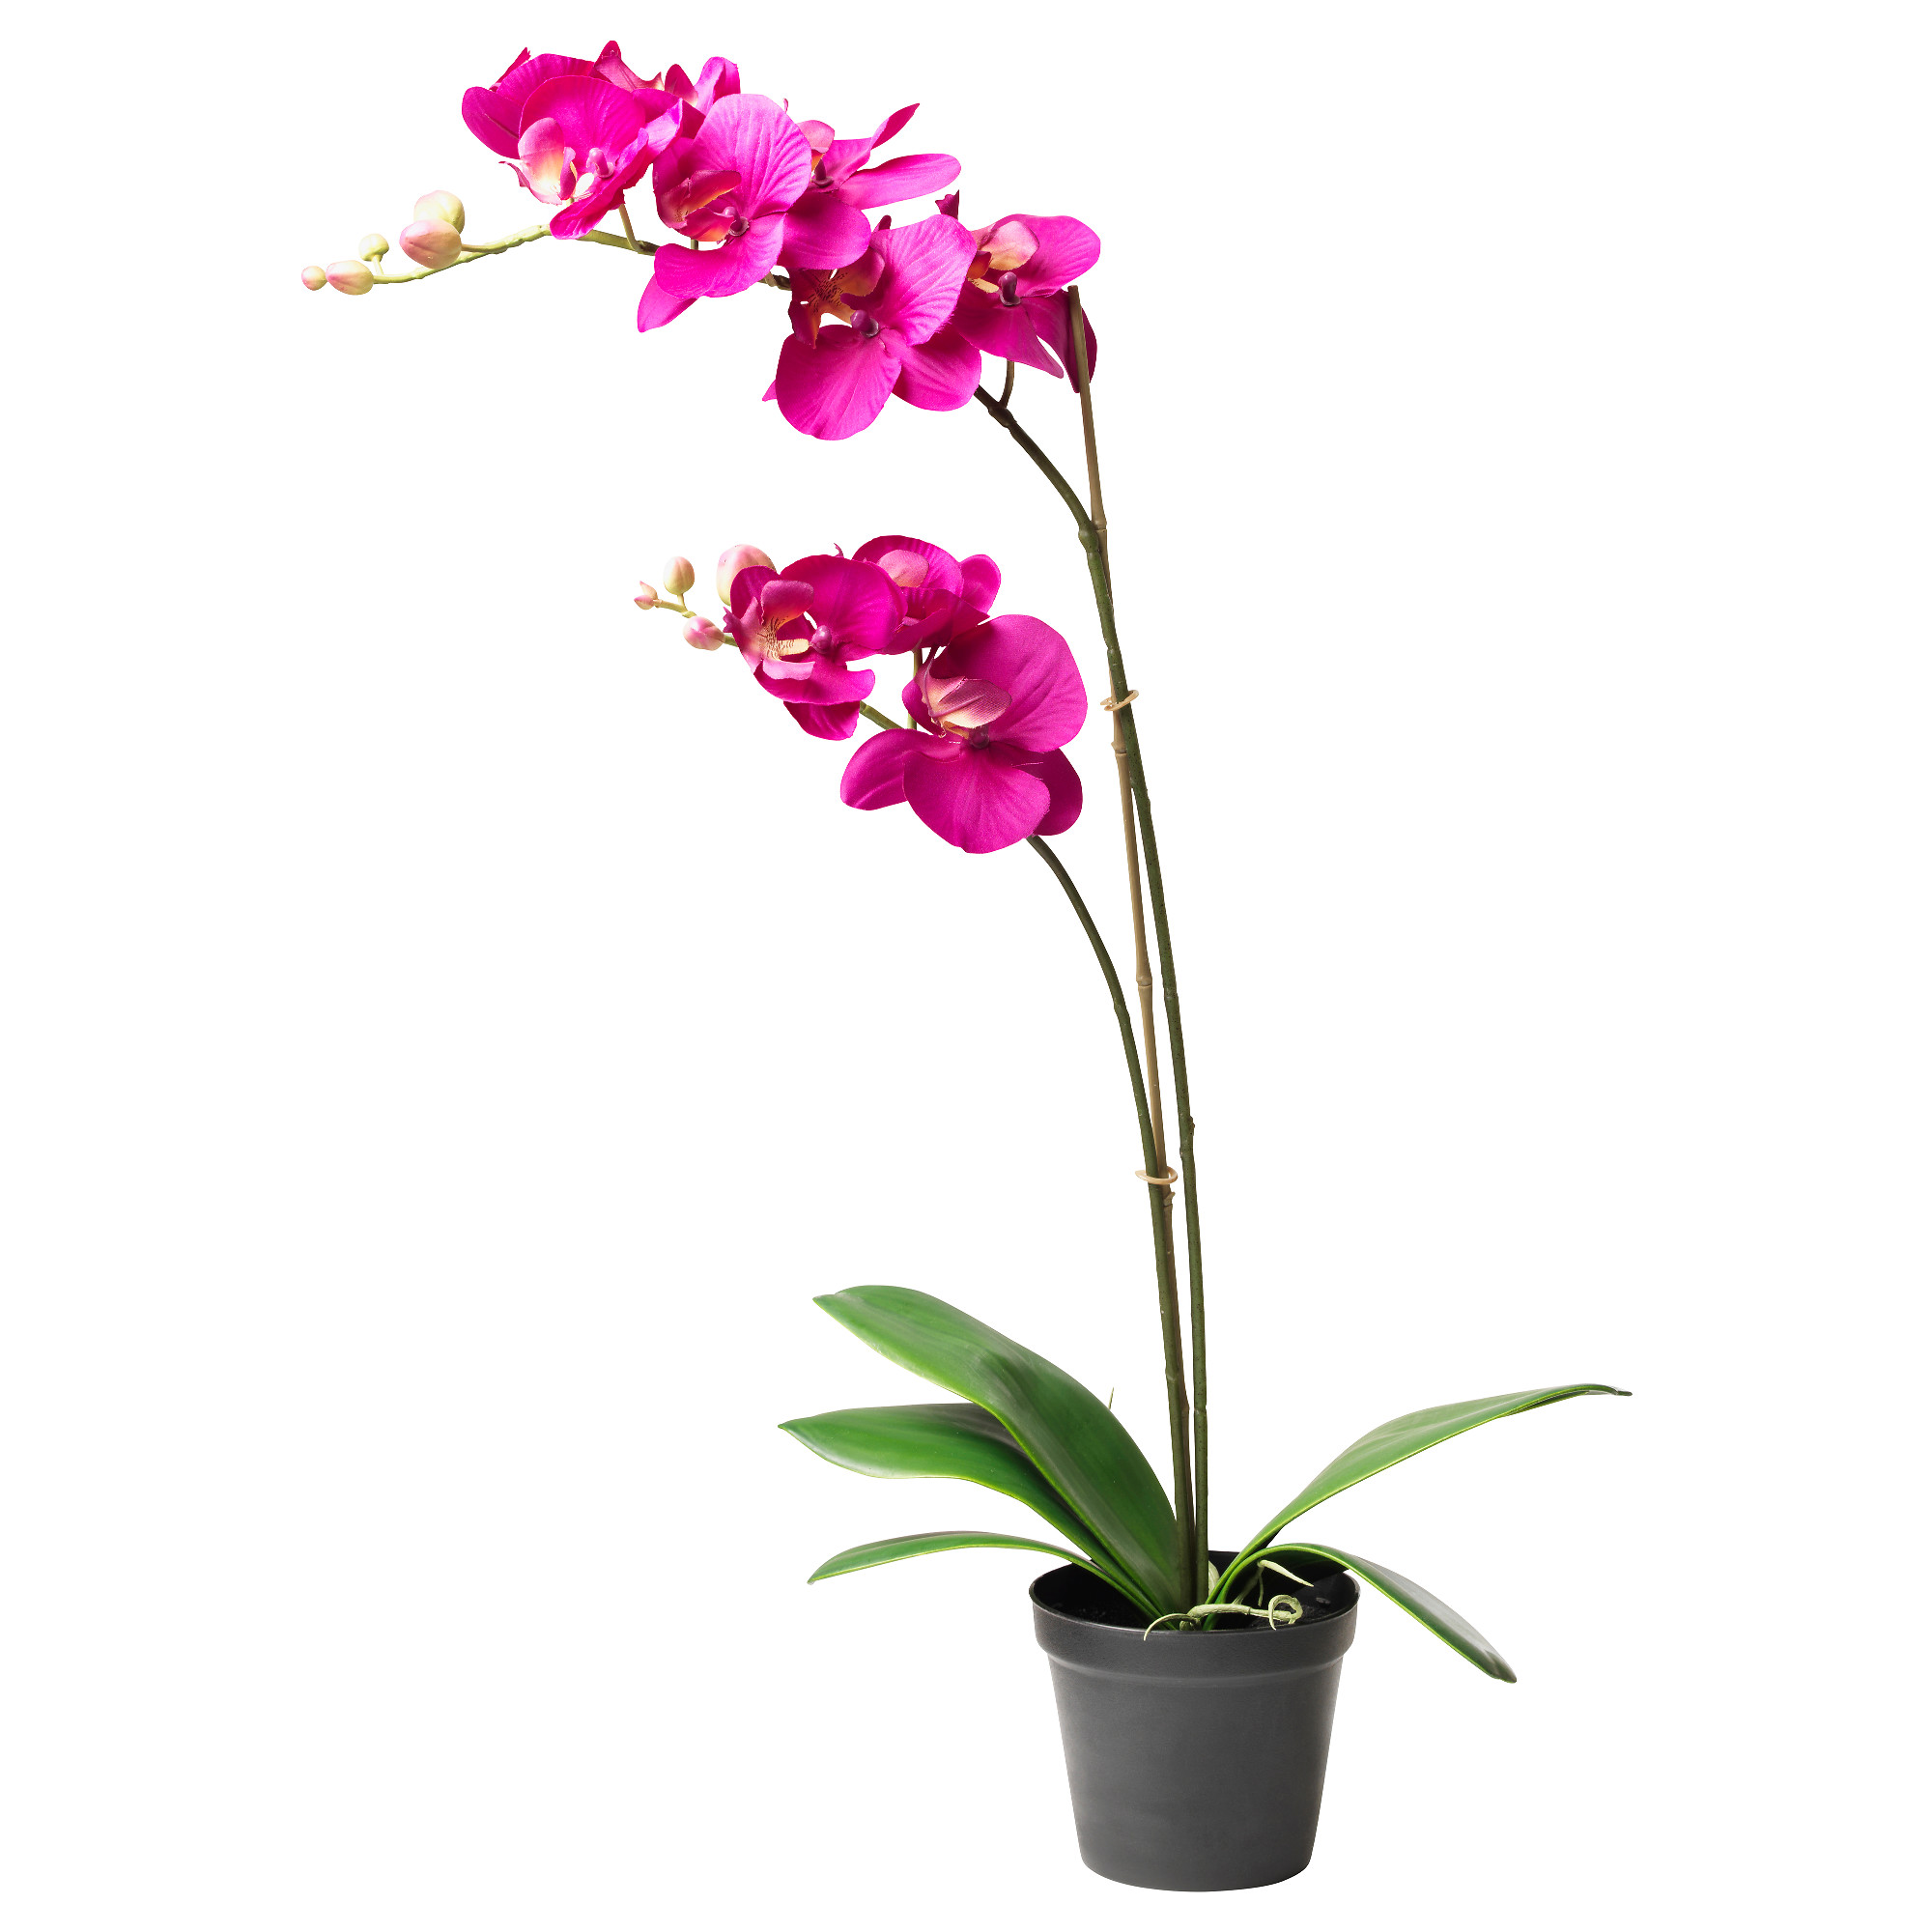 Купить орхидею в горшке авито. Орхидея фаленопсис икеа. Фаленопсис в горшке. Цветок в горшке фаленопсис.